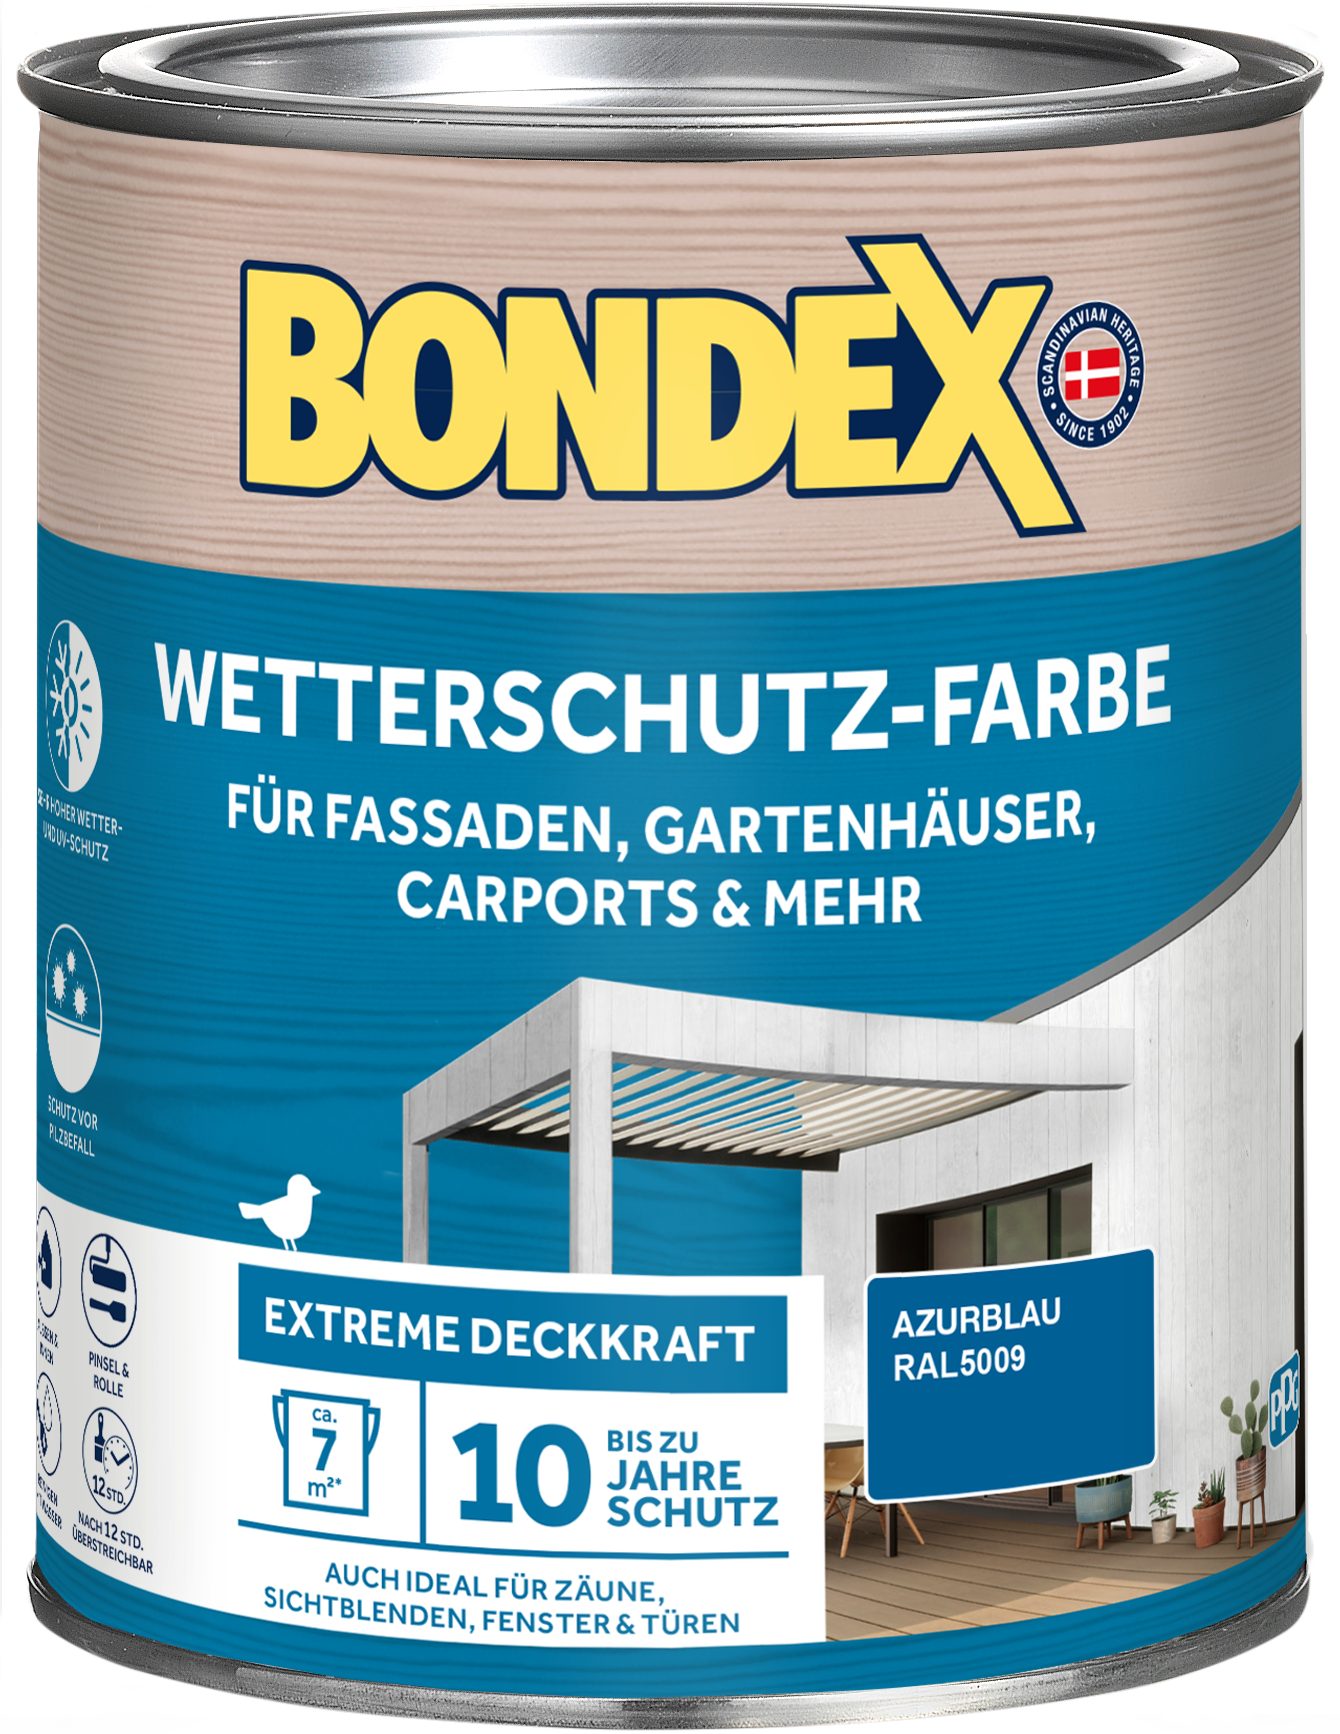 Bondex Wetterschutzfarbe witterungsbeständig, hohe Deckkraft, verschiedene Farben und Grössen